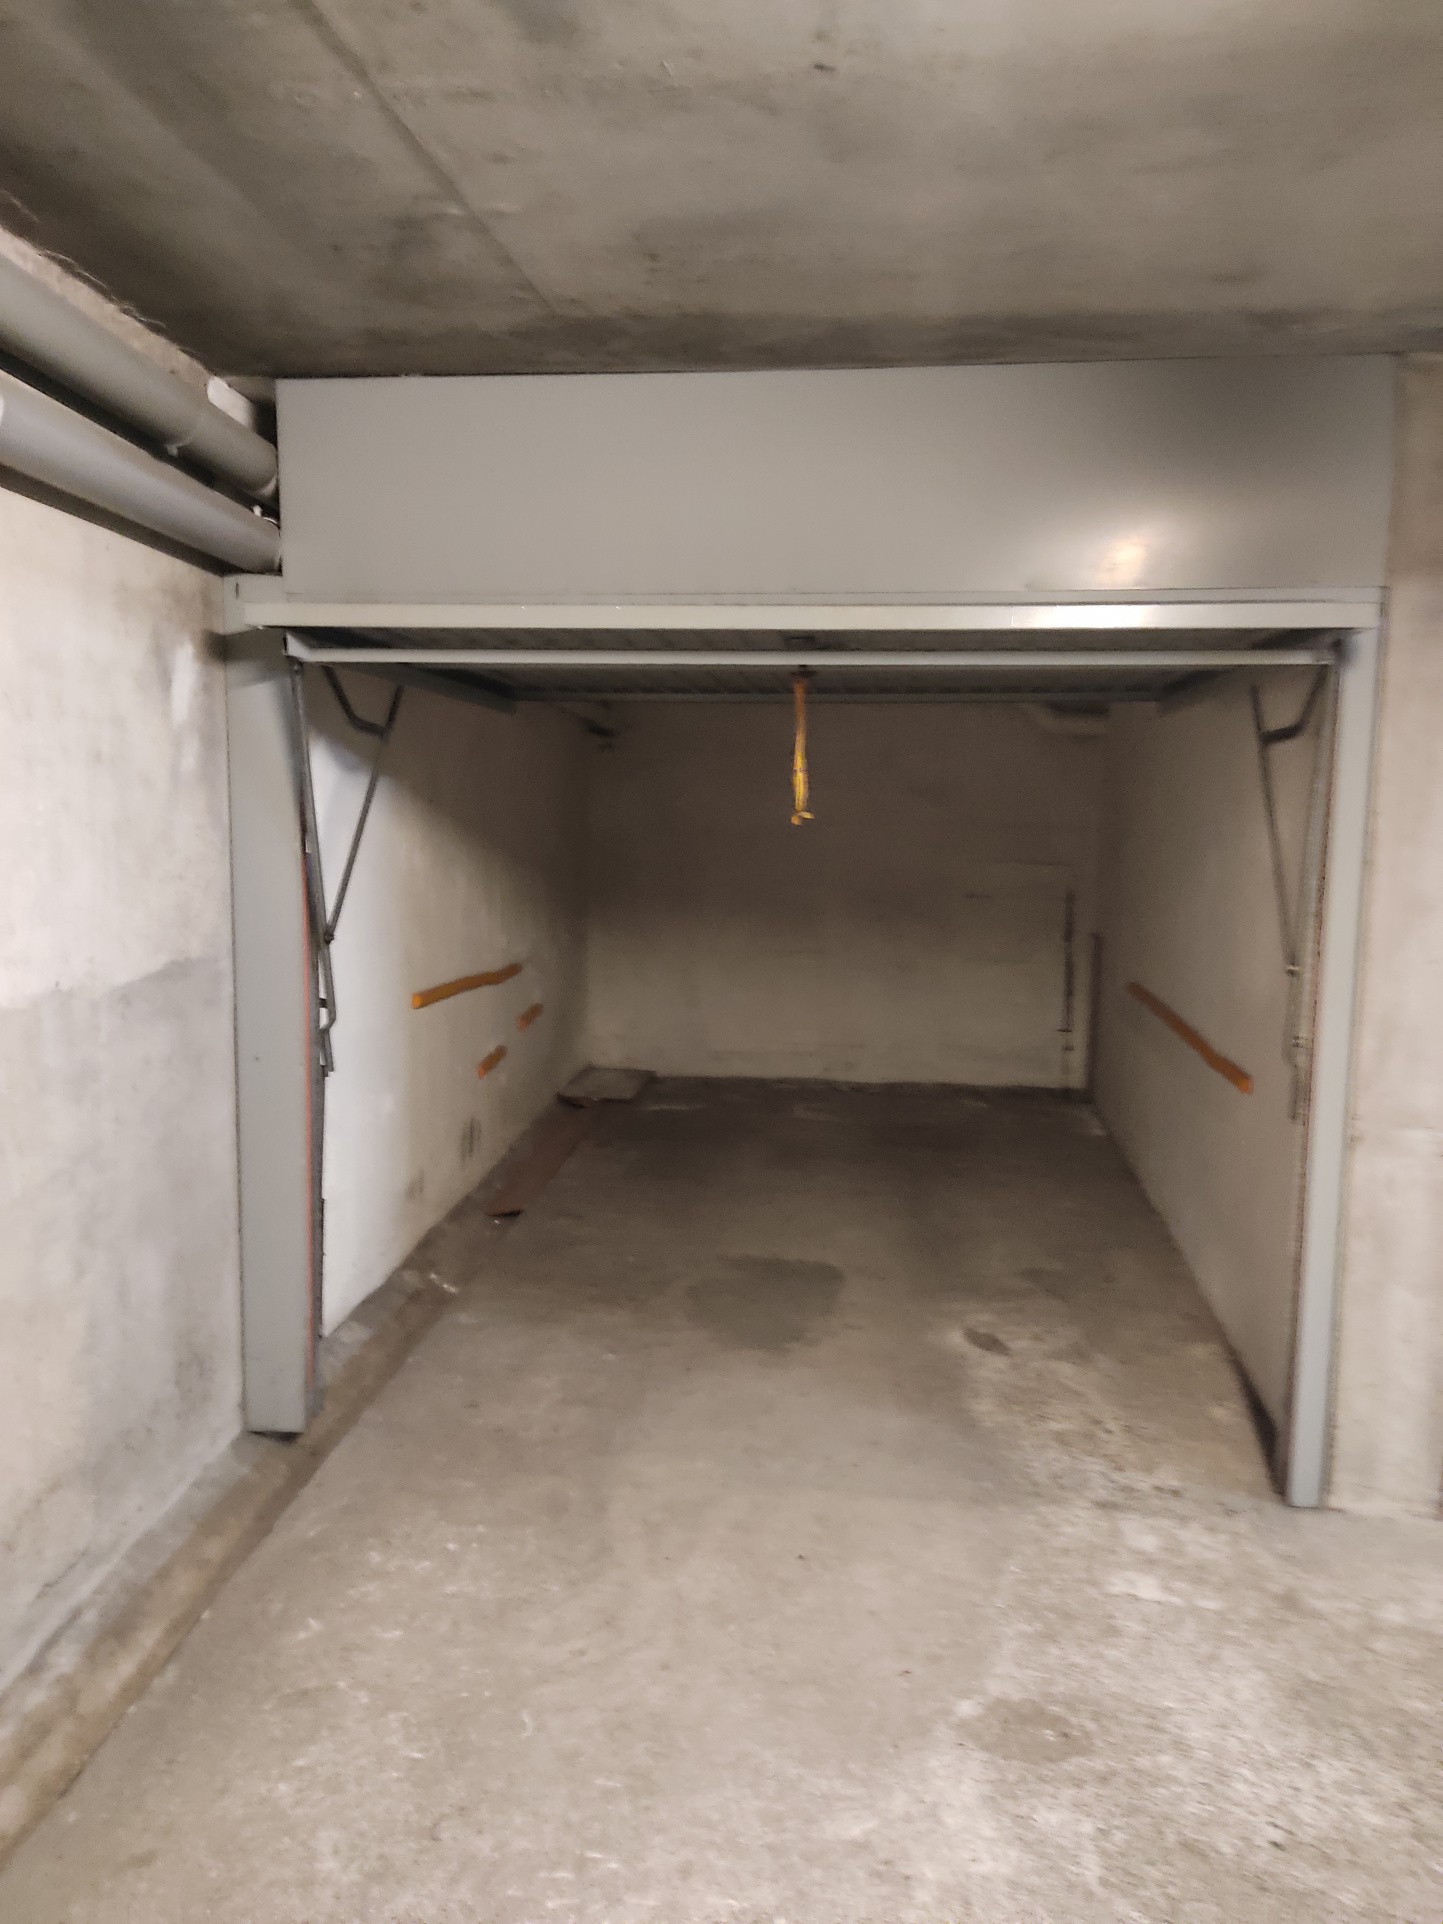 Location Garage / Parking à Carcassonne 0 pièce